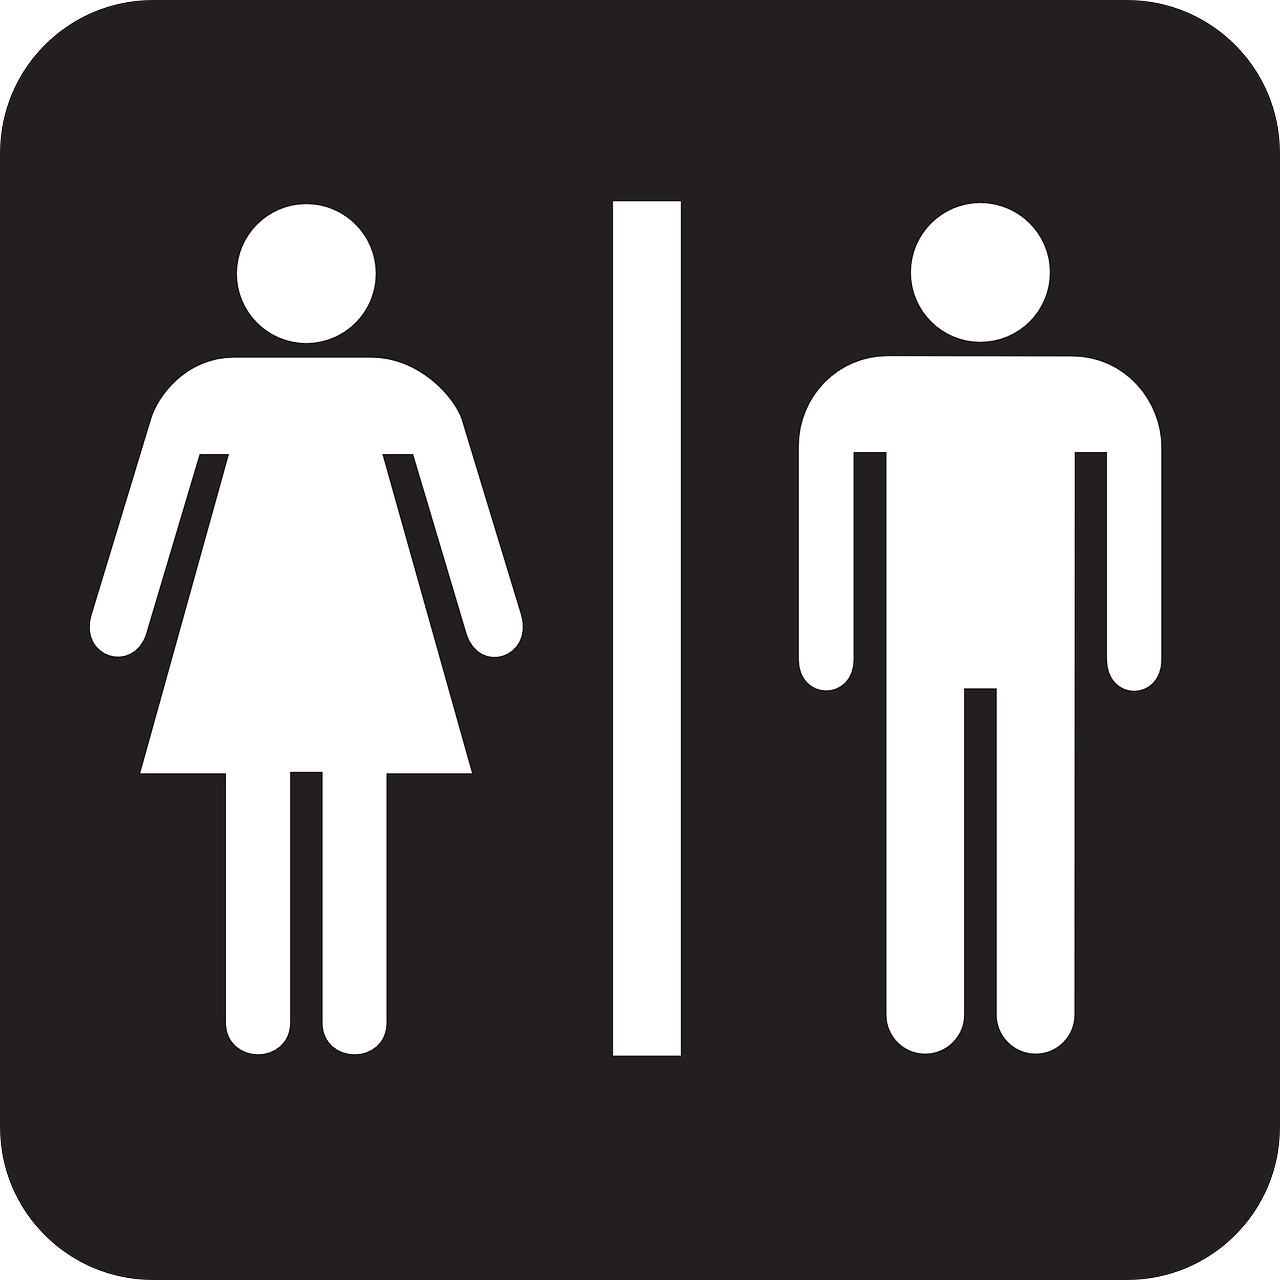 Bathroom Logo - Montana Transgender Restroom Initiative Attempt Falls Short